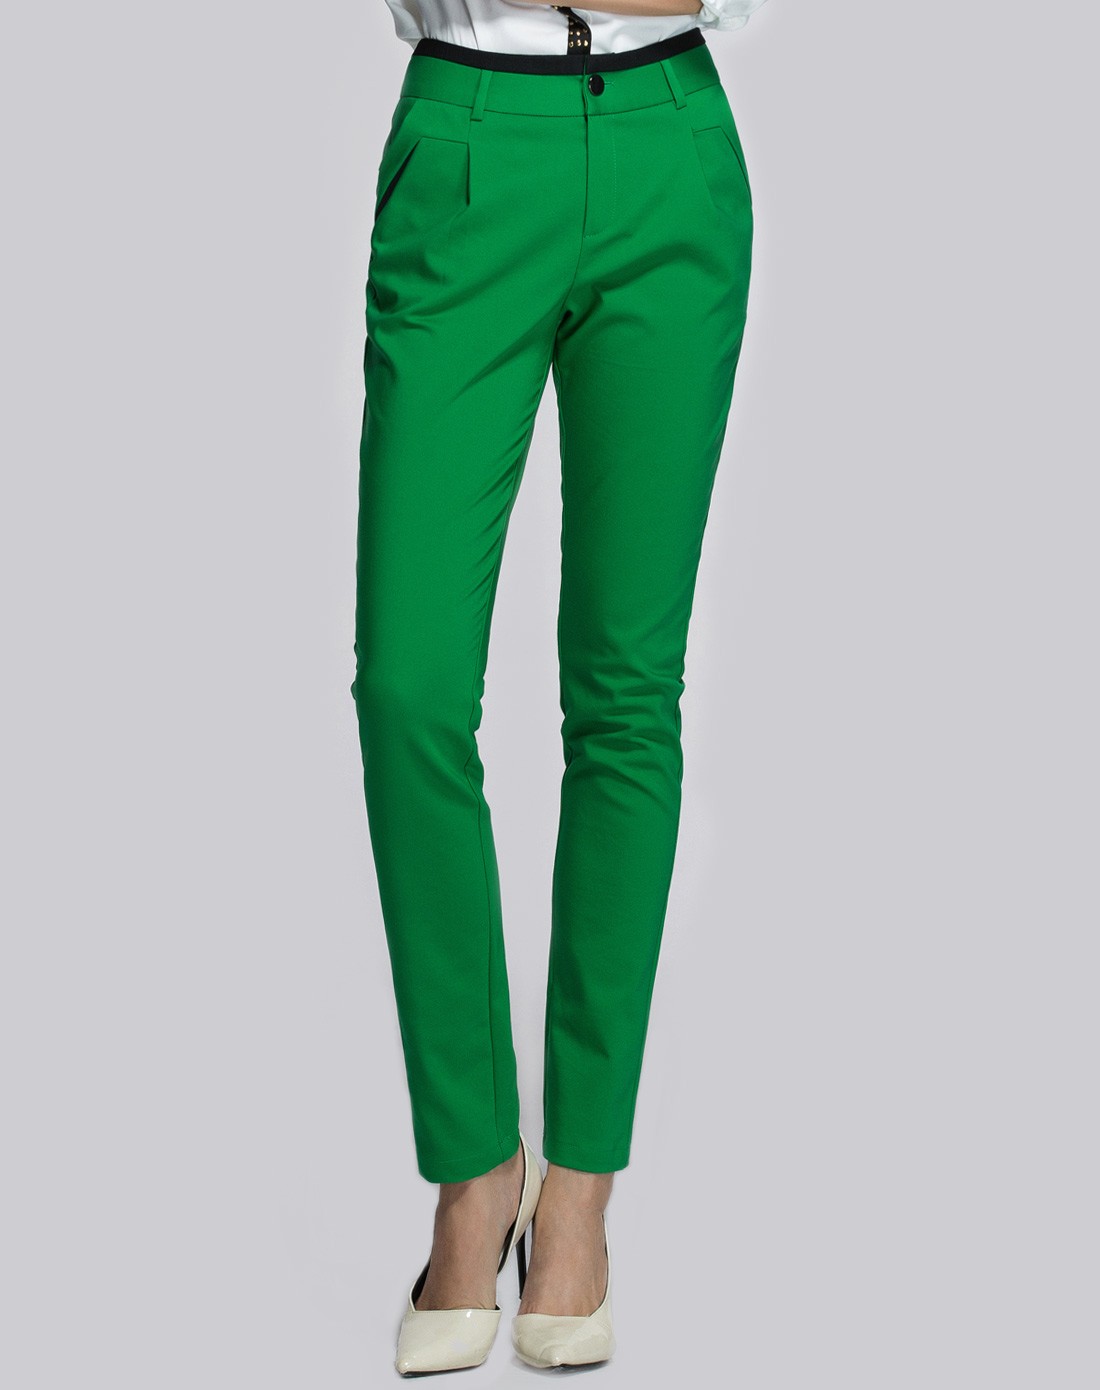 绿色时尚潮流修身小哈伦长裤